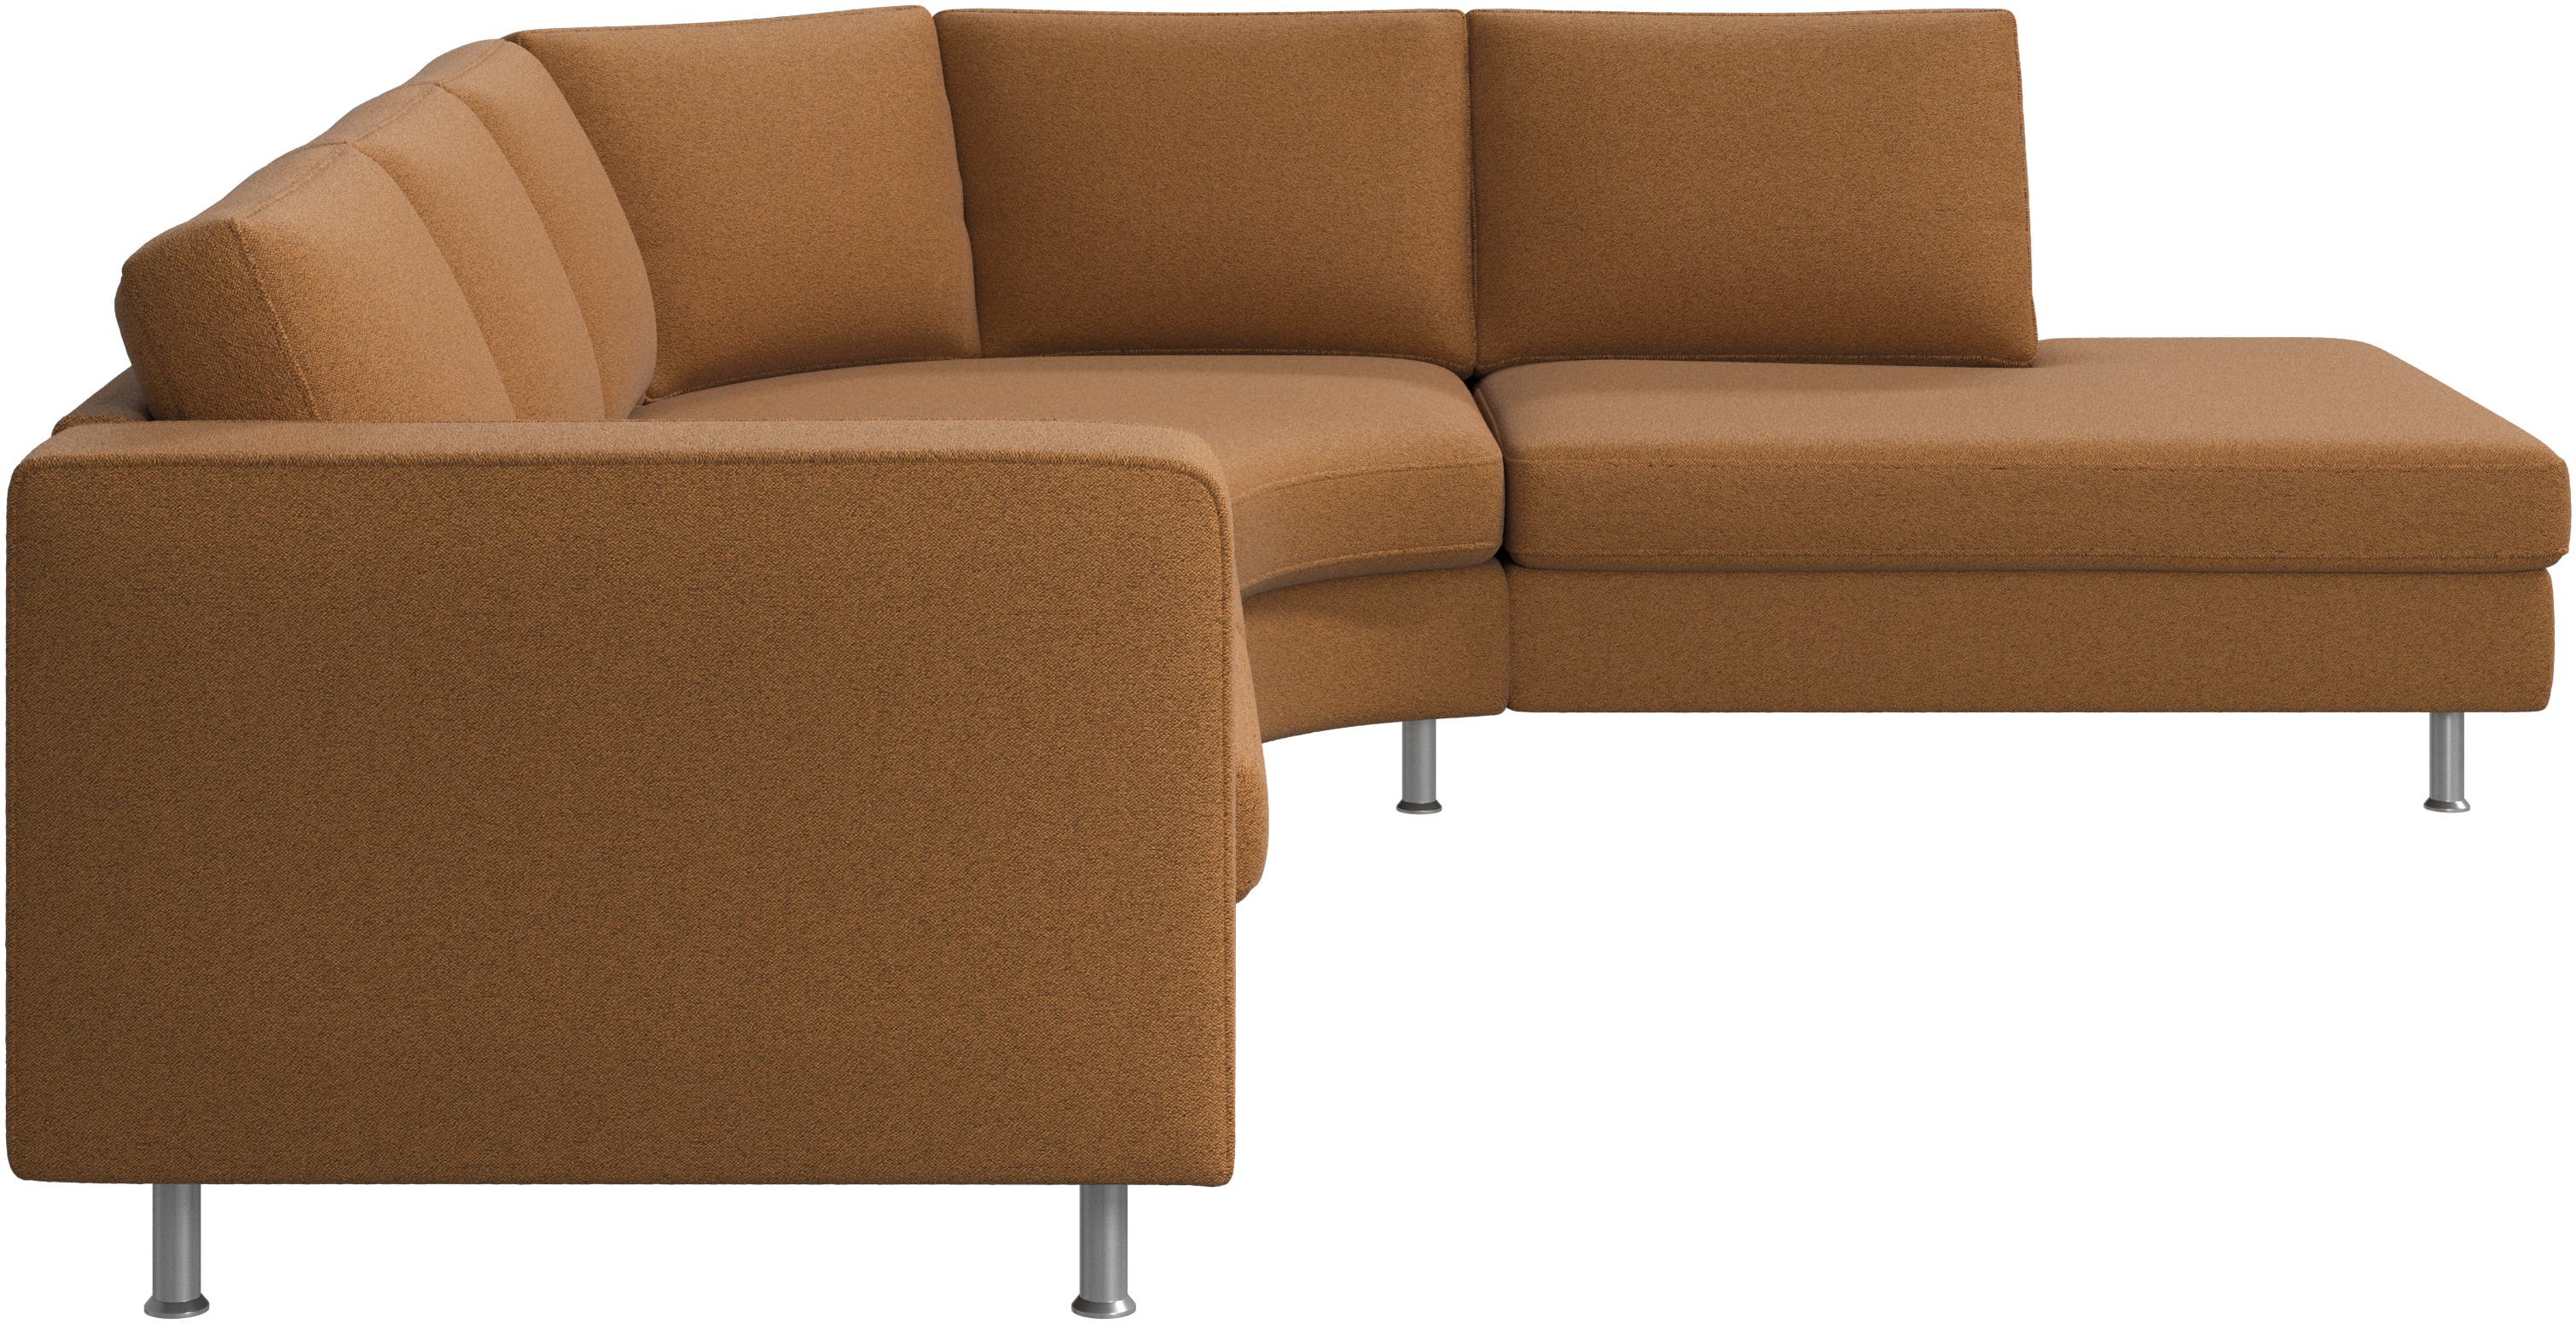 Indivi Sofa mit rundem Loungemodul